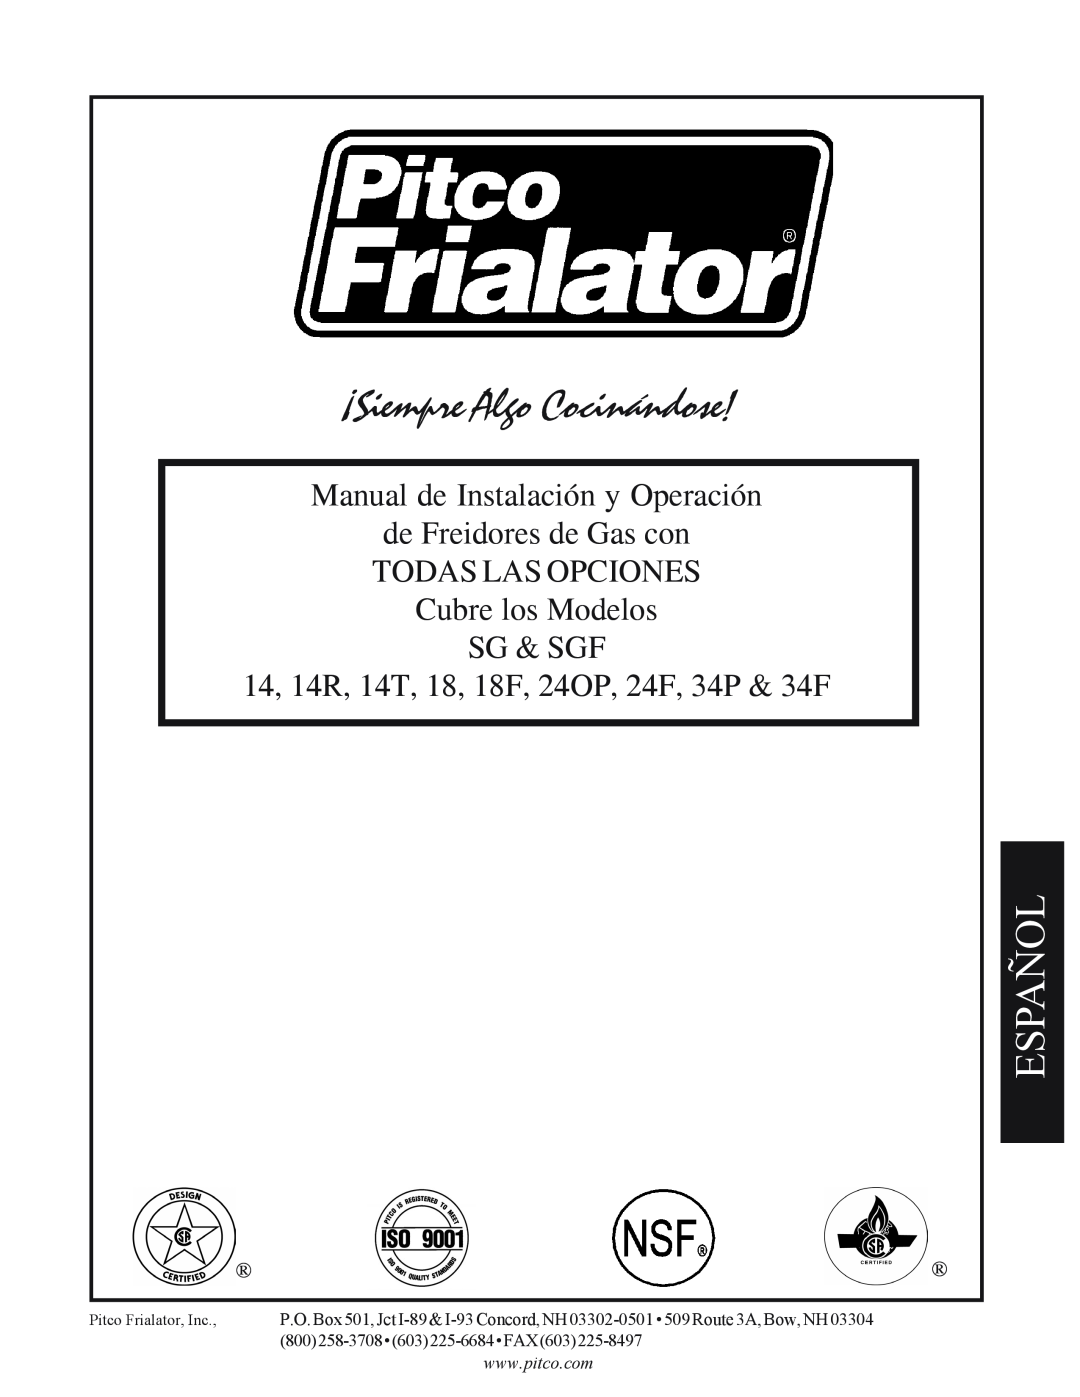 Pitco Frialator SG Español, Manual de Instalación y Operación de Freidores de Gas con, ¡Siempre Algo Cocinándose 